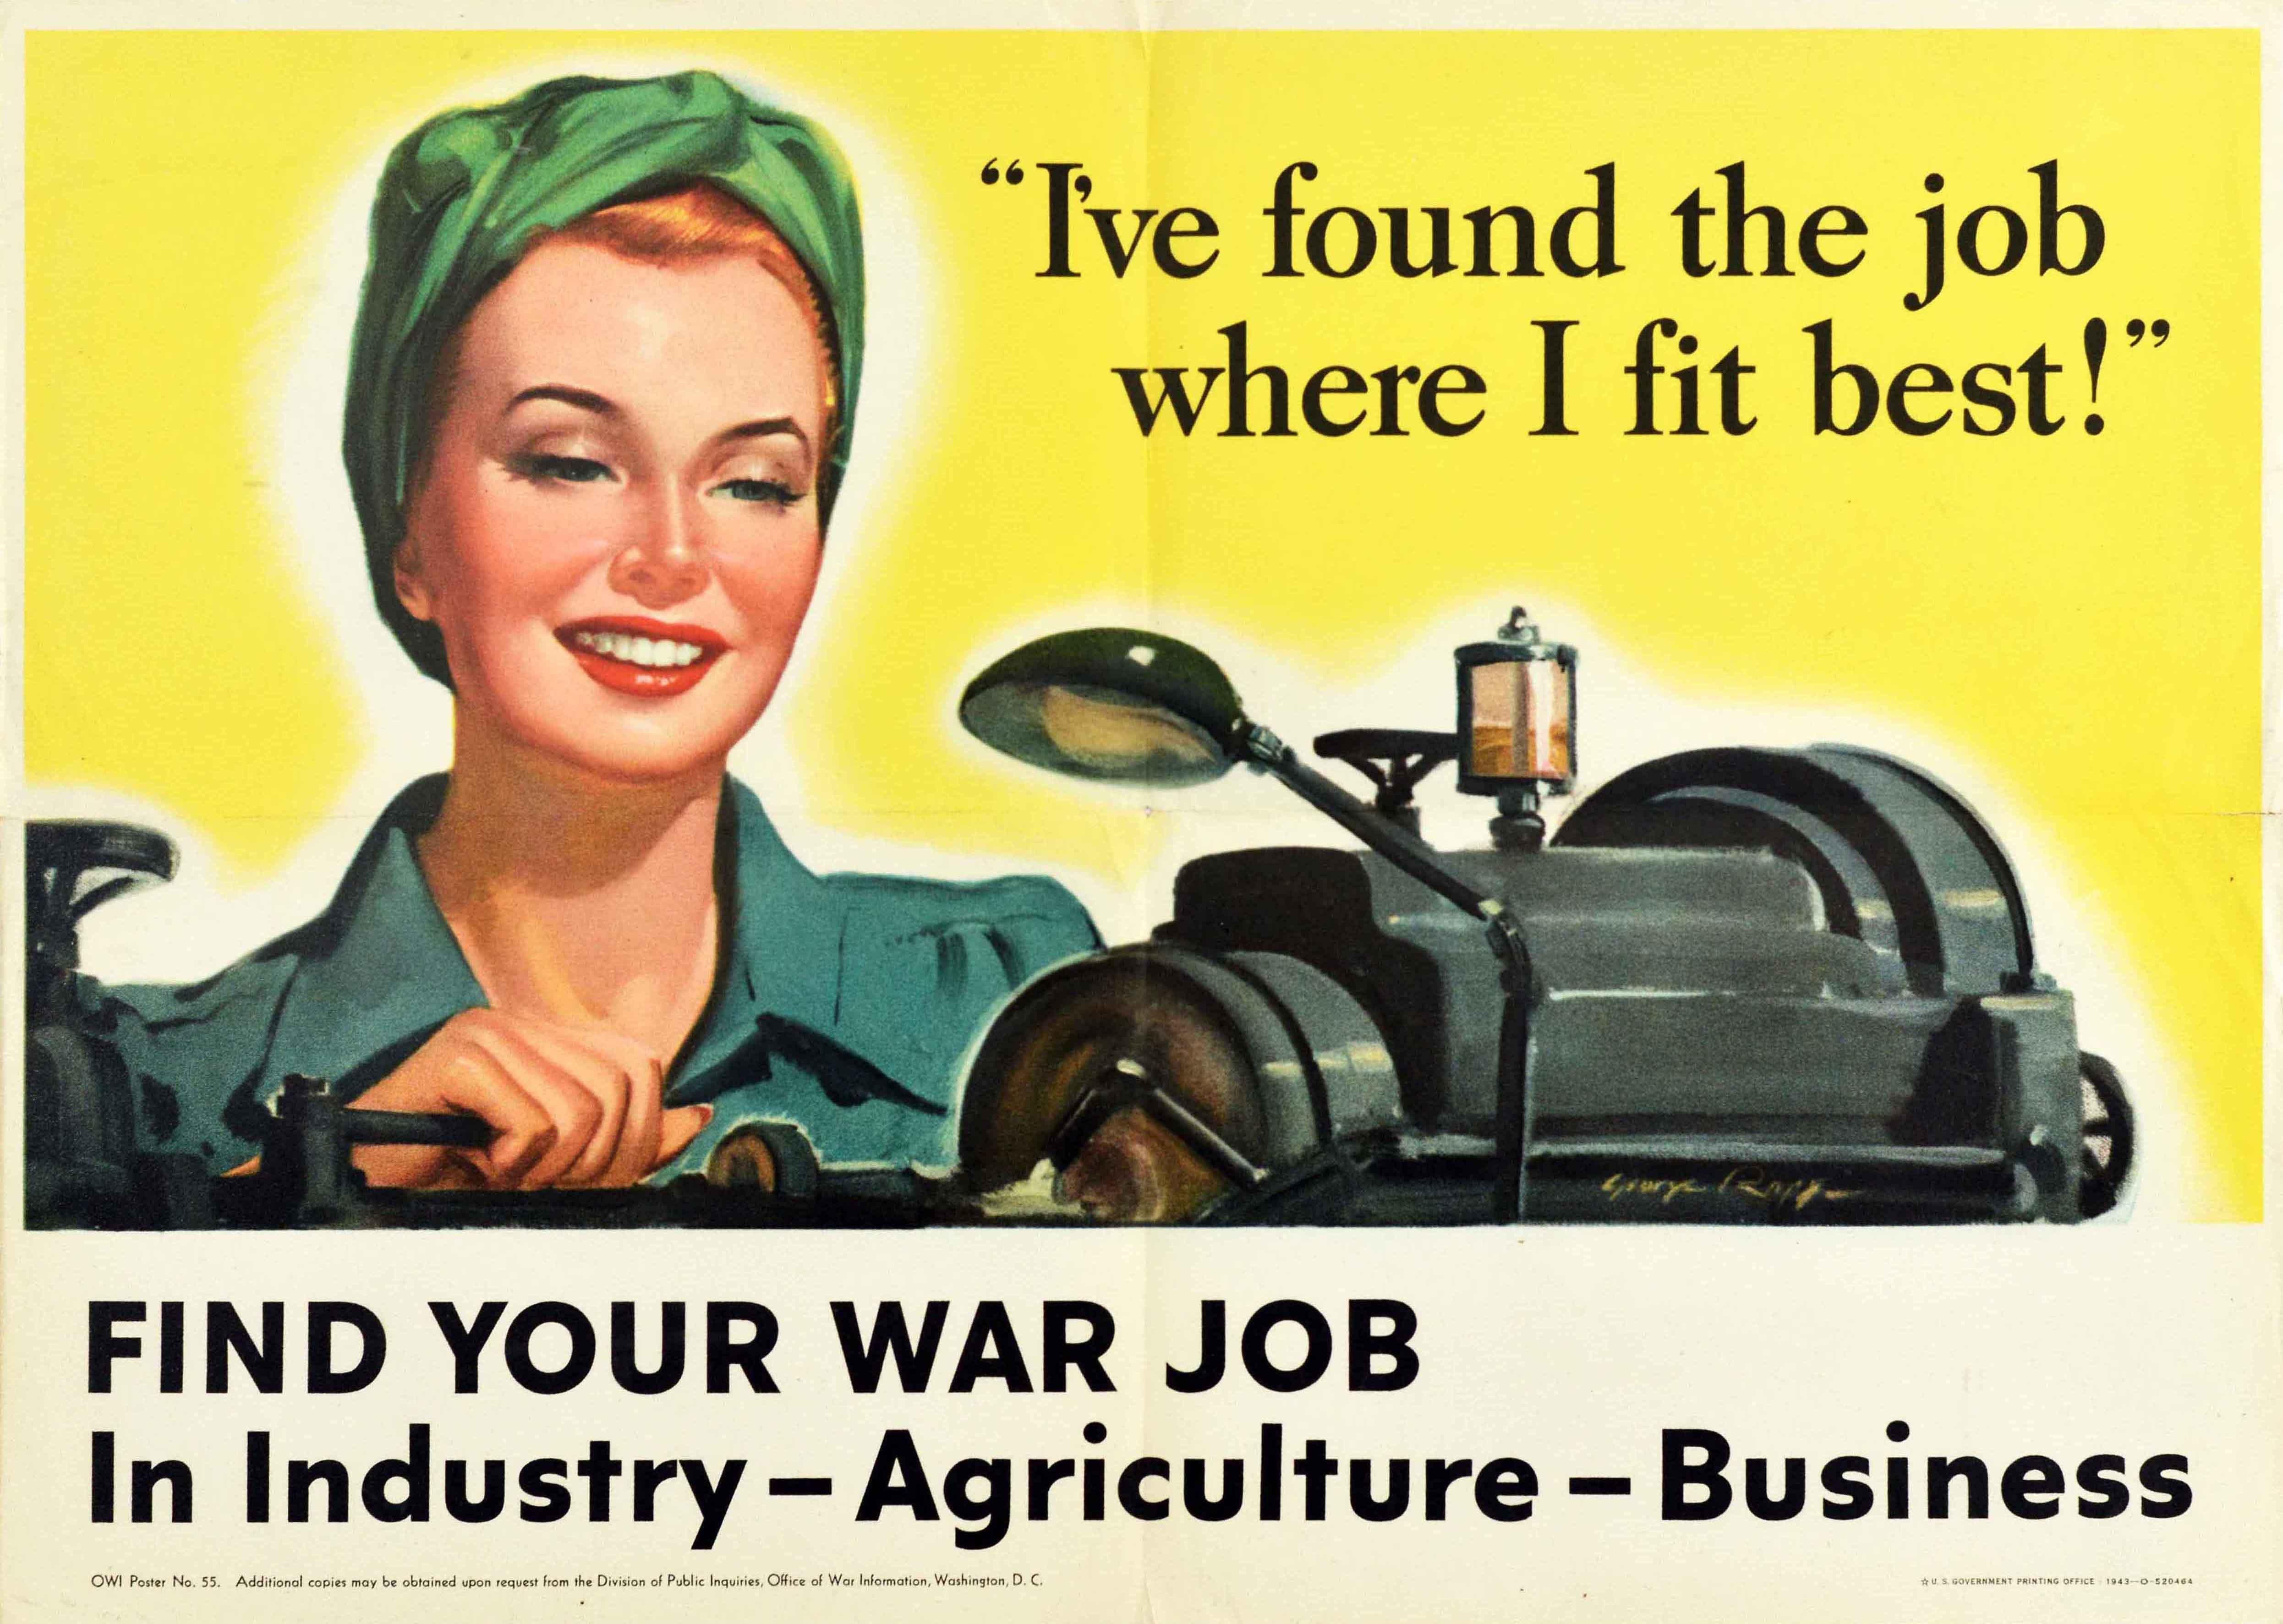 Affiche de propagande originale de la Seconde Guerre mondiale distribuée par le Bureau d'information sur la guerre pour encourager l'emploi sur le front intérieur. Elle présente une illustration d'une femme souriante en uniforme travaillant sur une